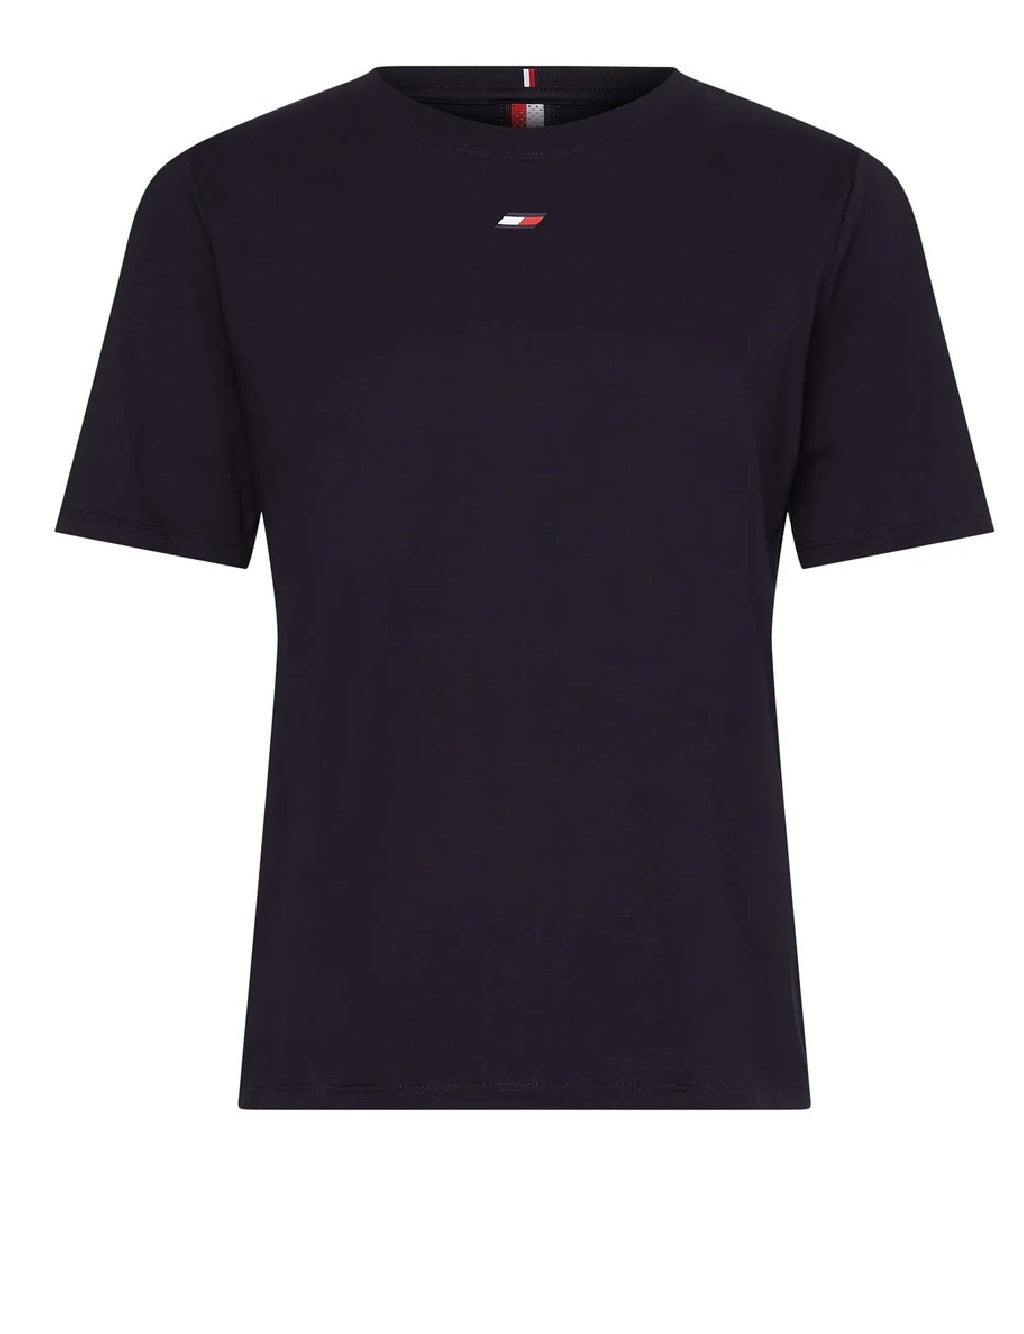 T-shirt Tommy Hilfiger modello S10S101478 con il logo del marchio ricamato al petto e bandiera a fascia nelle spalle.